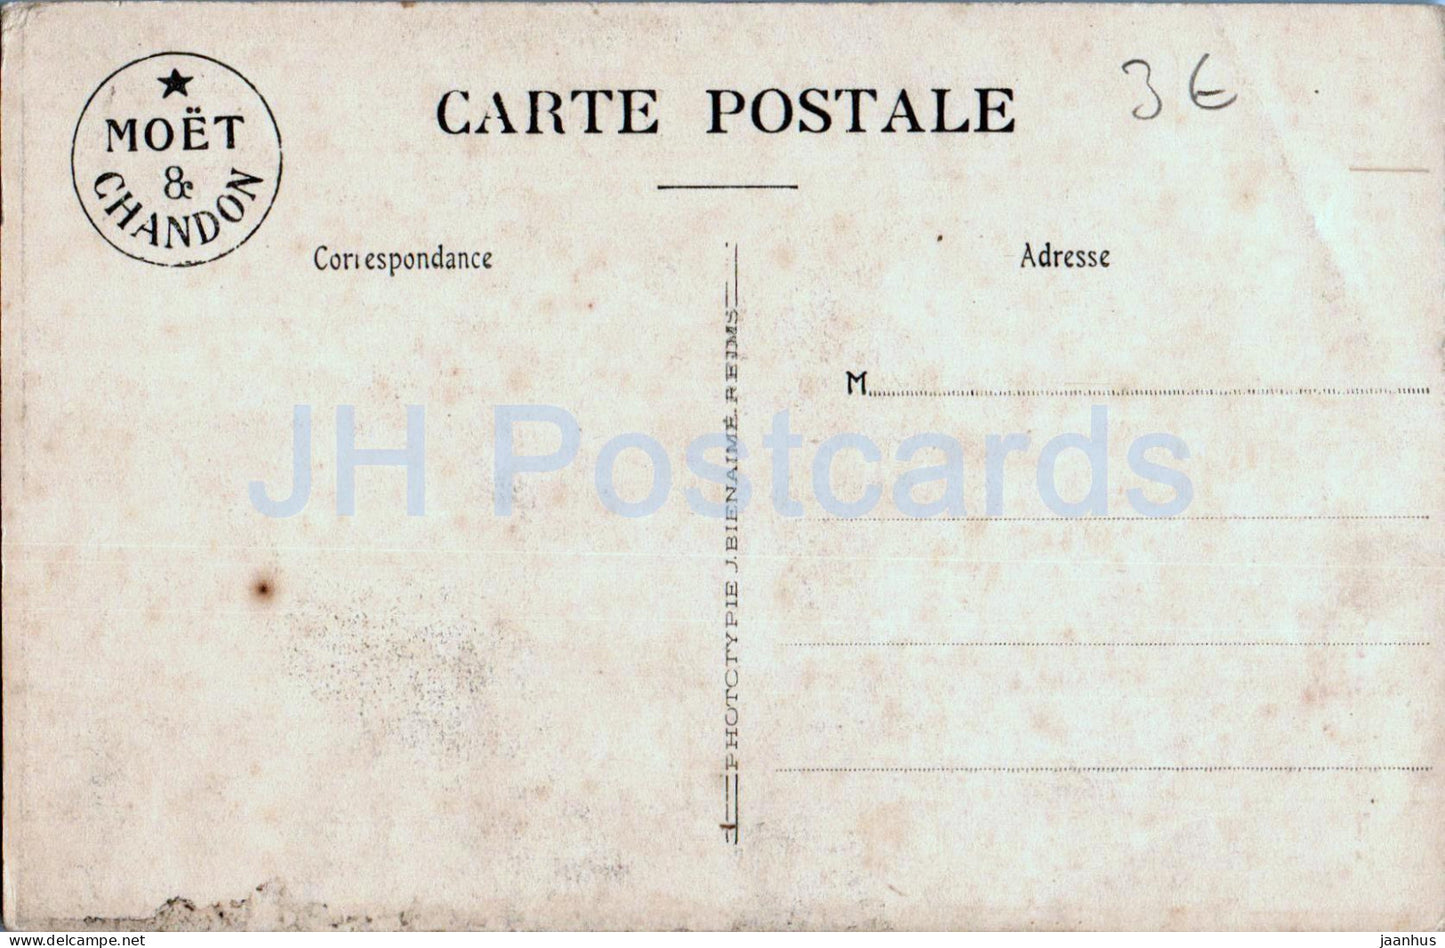 Vue Generale de l'Ancienne Abbaye d'Hautvillers - Maison - Moet et Chandon - alte Postkarte - Frankreich - unbenutzt 